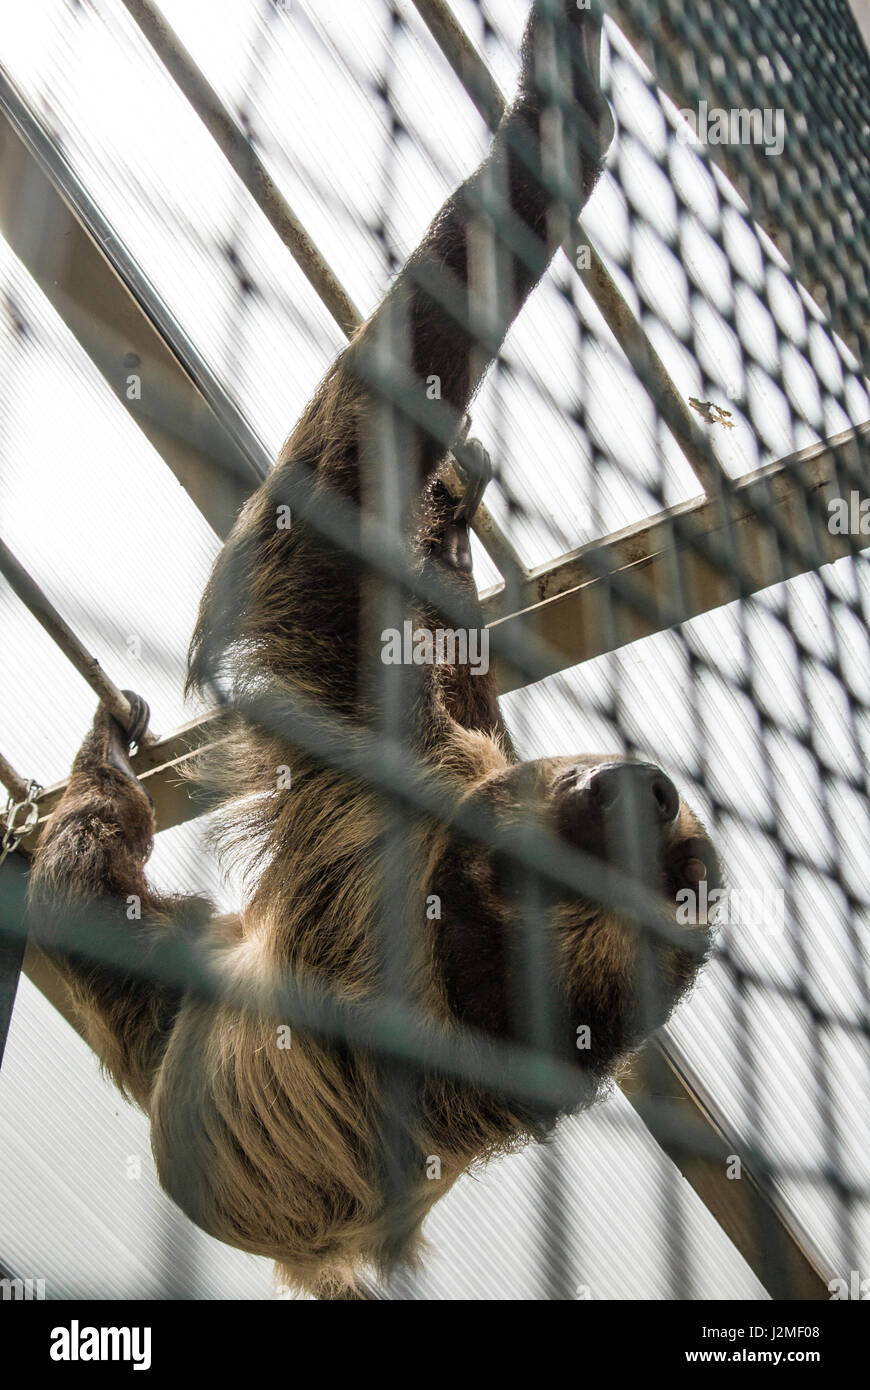 Un à deux doigts de Linné sloth (Choloepus didactylus) derrière le treillis suspendu à la constructions d'une pièce d'Amérique Tropicana au Zoo de Budapest Banque D'Images